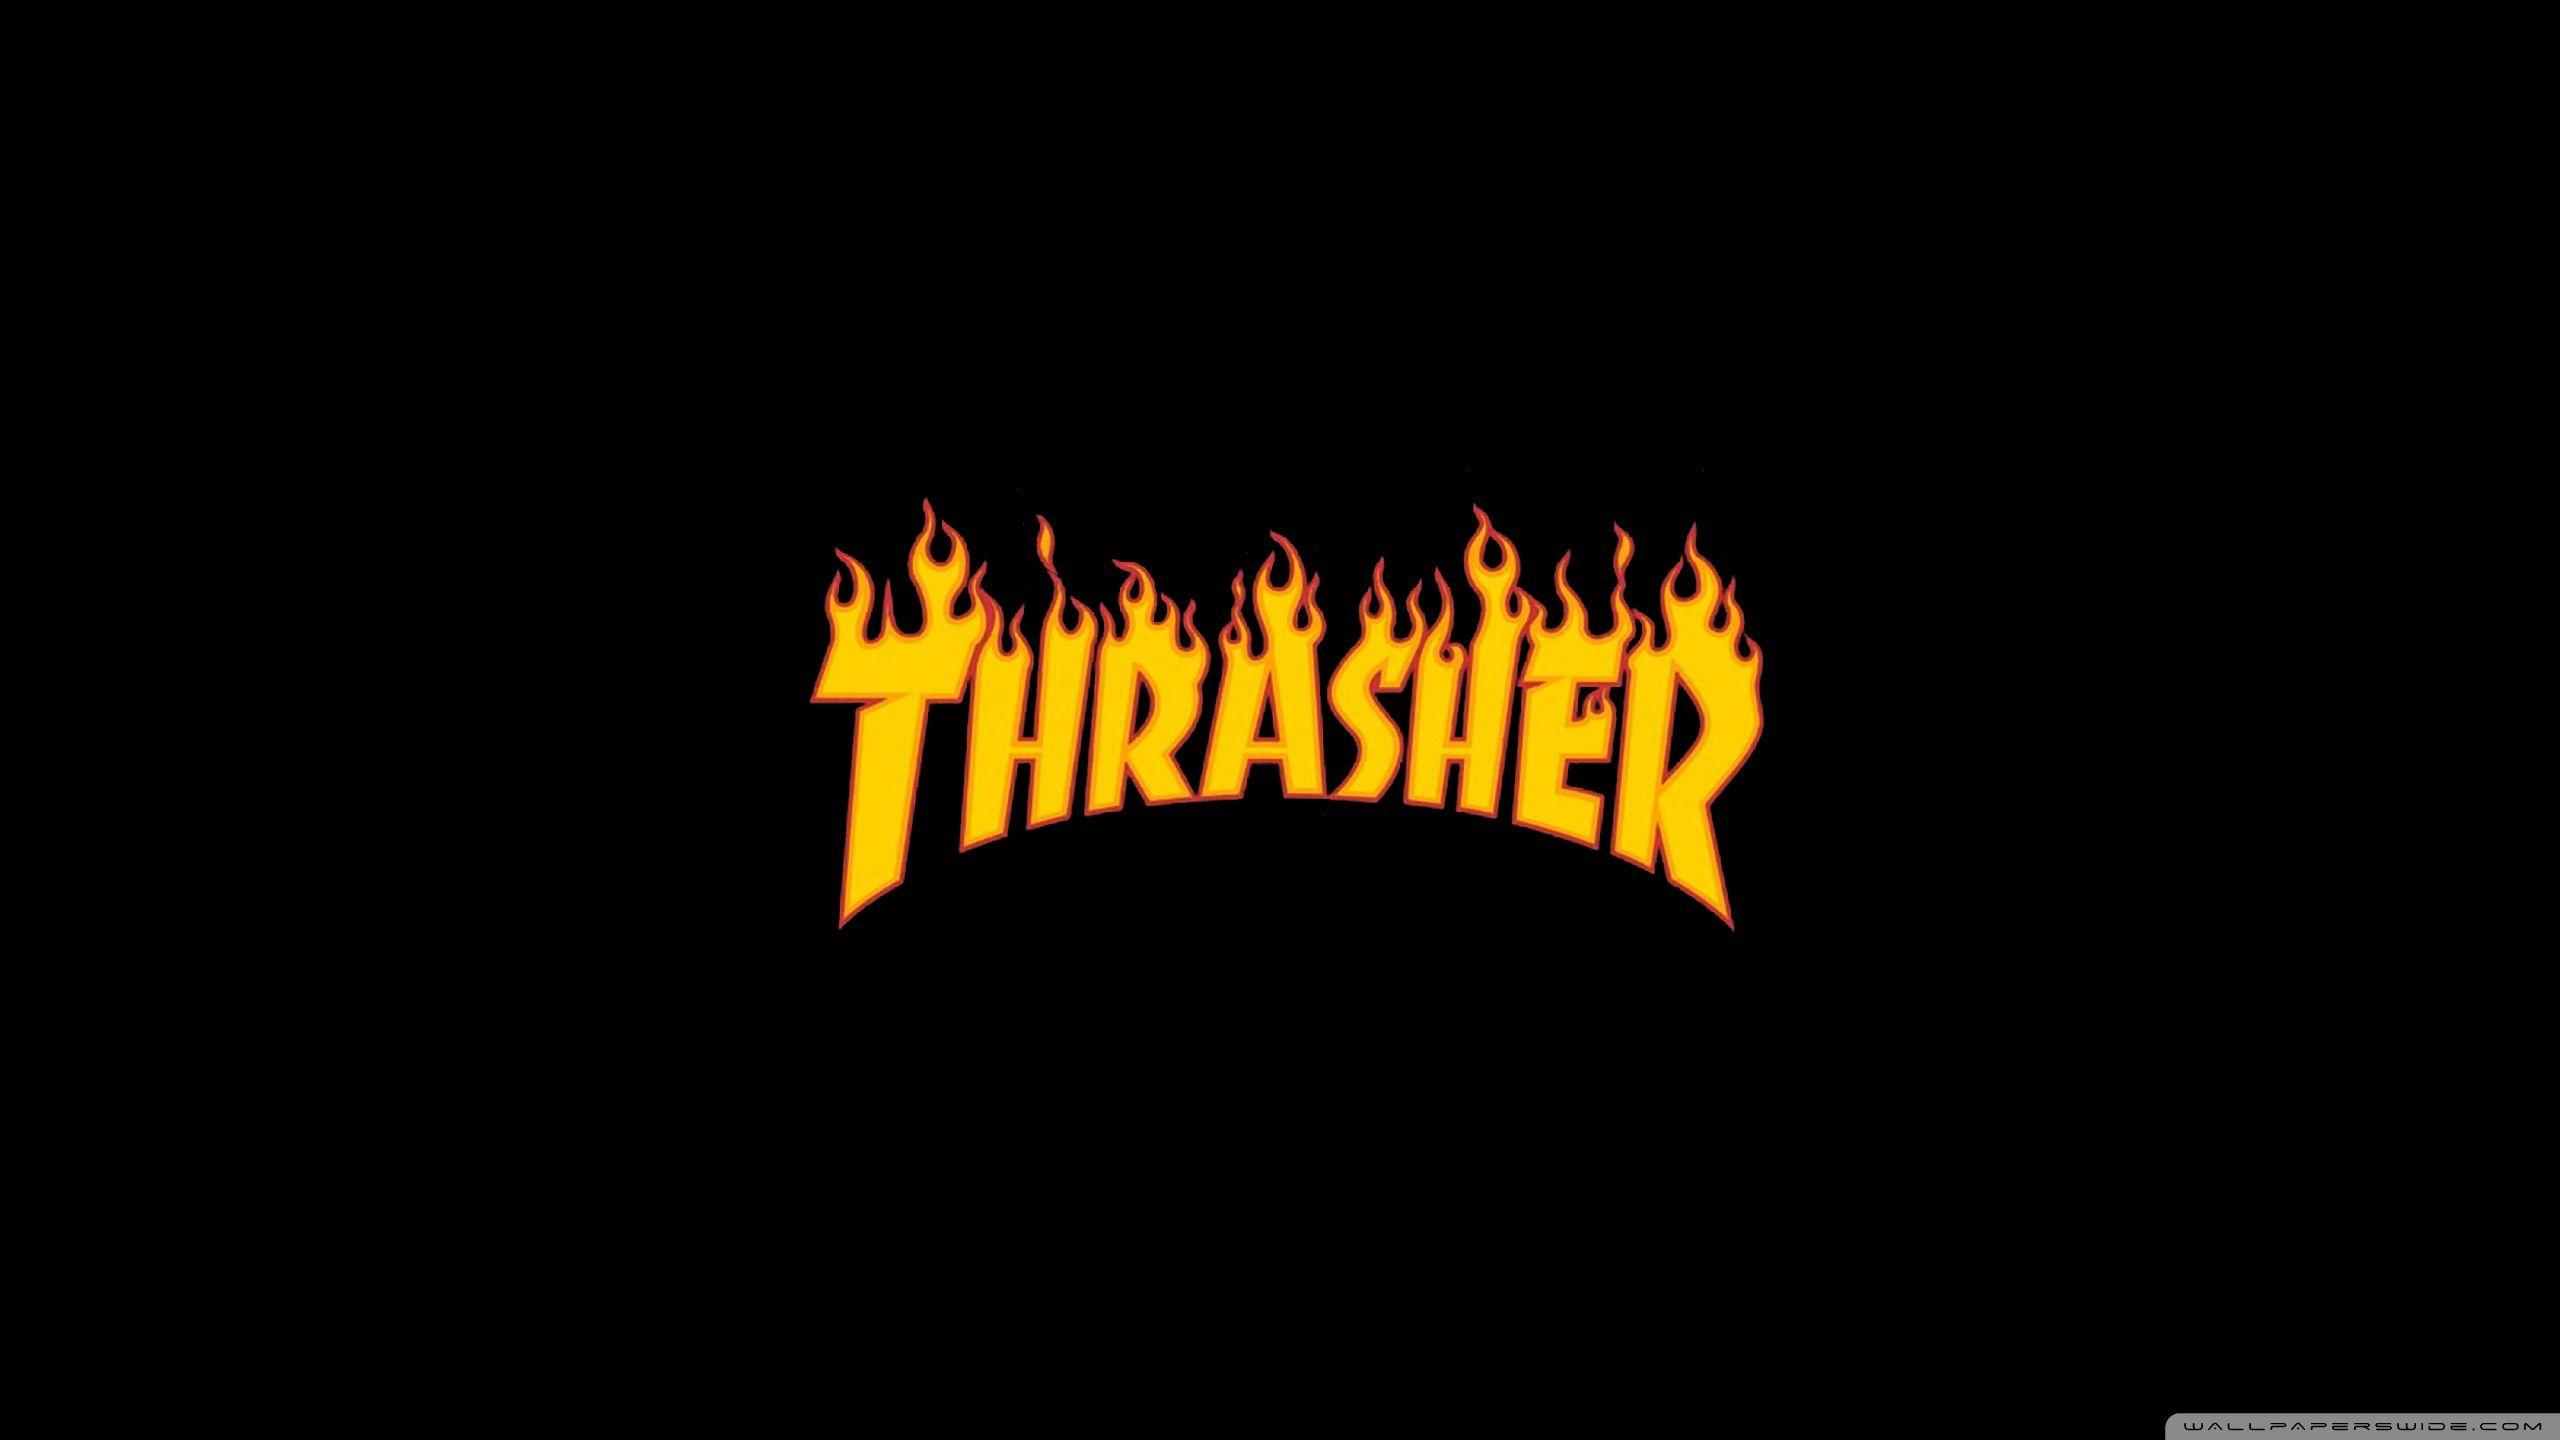 Chia sẻ 70+ về hình nền thrasher - solomon.edu.vn